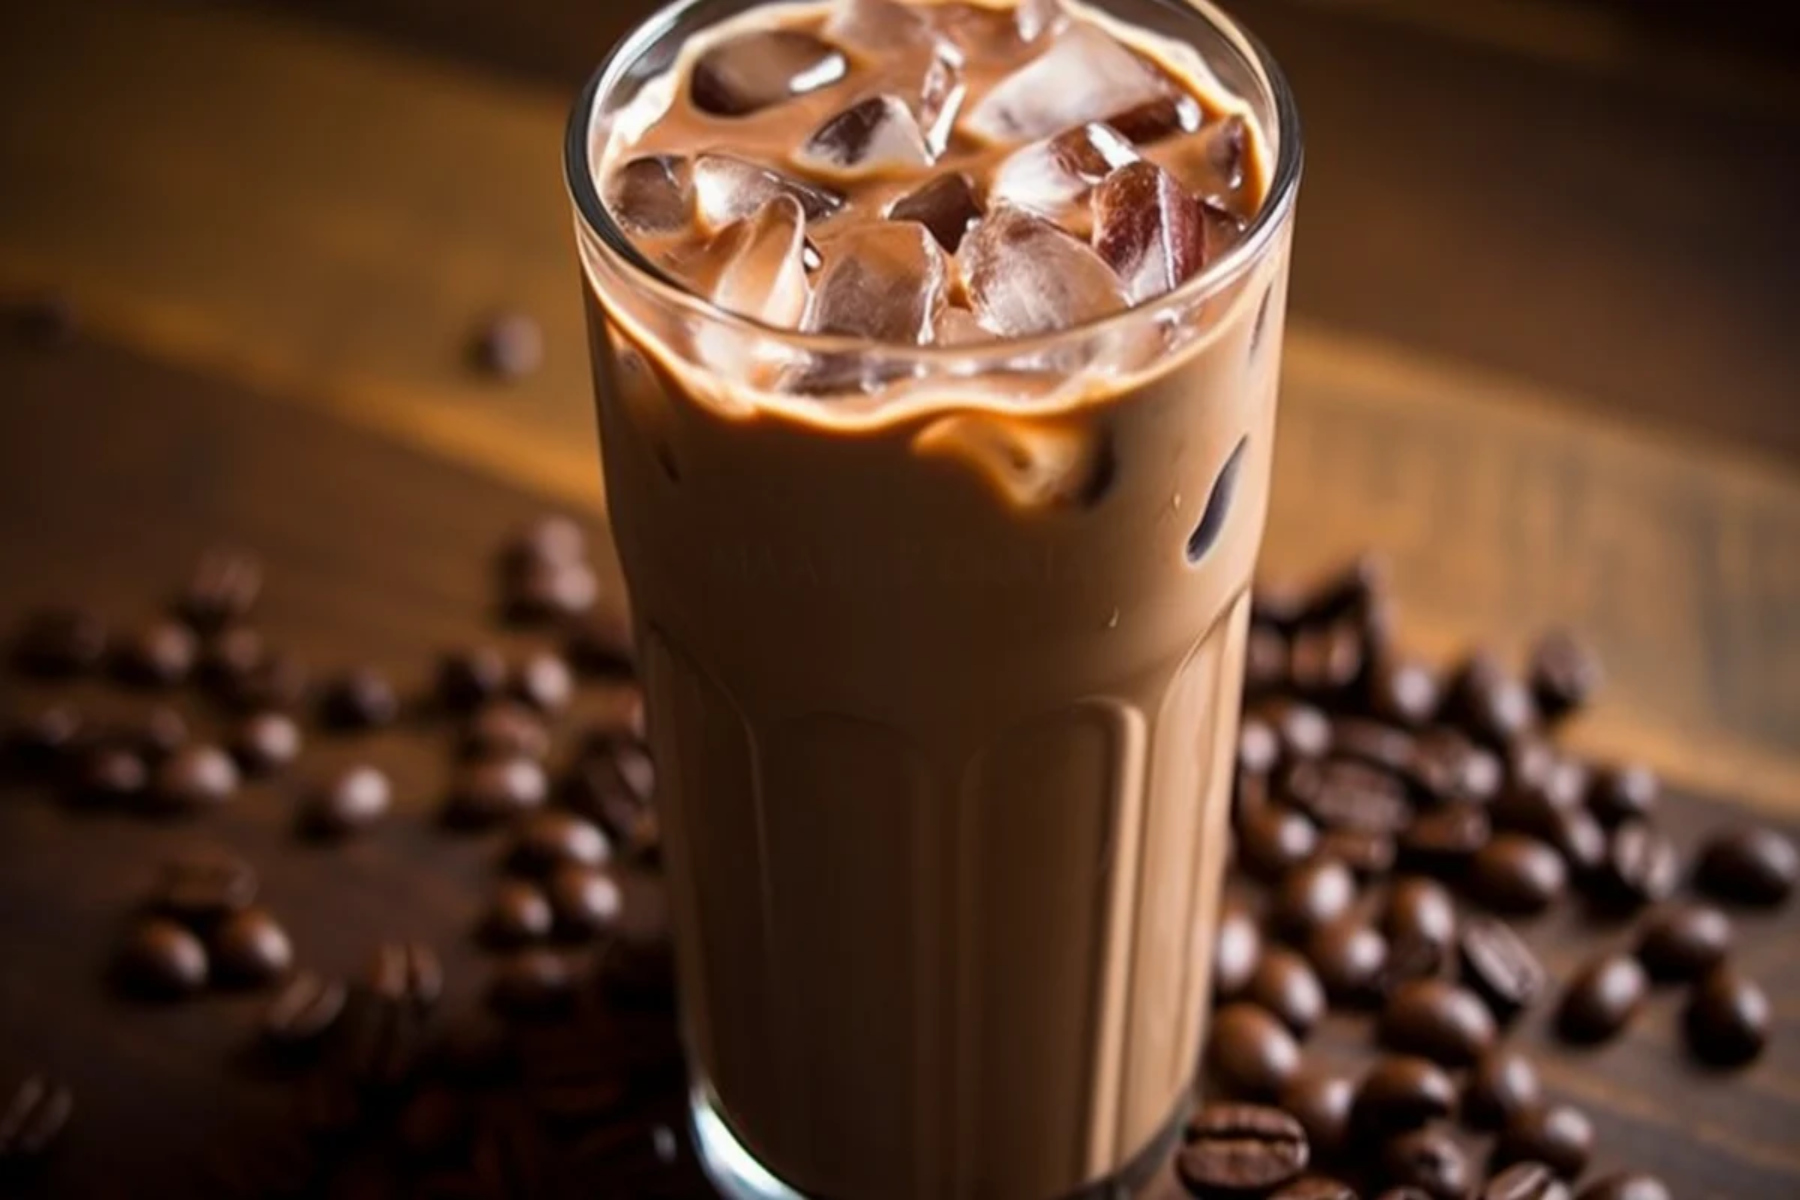 Δροσιστικό ρόφημα: Δροσιστικό ρόφημα με καφέ, σοκολάτα και πάγο